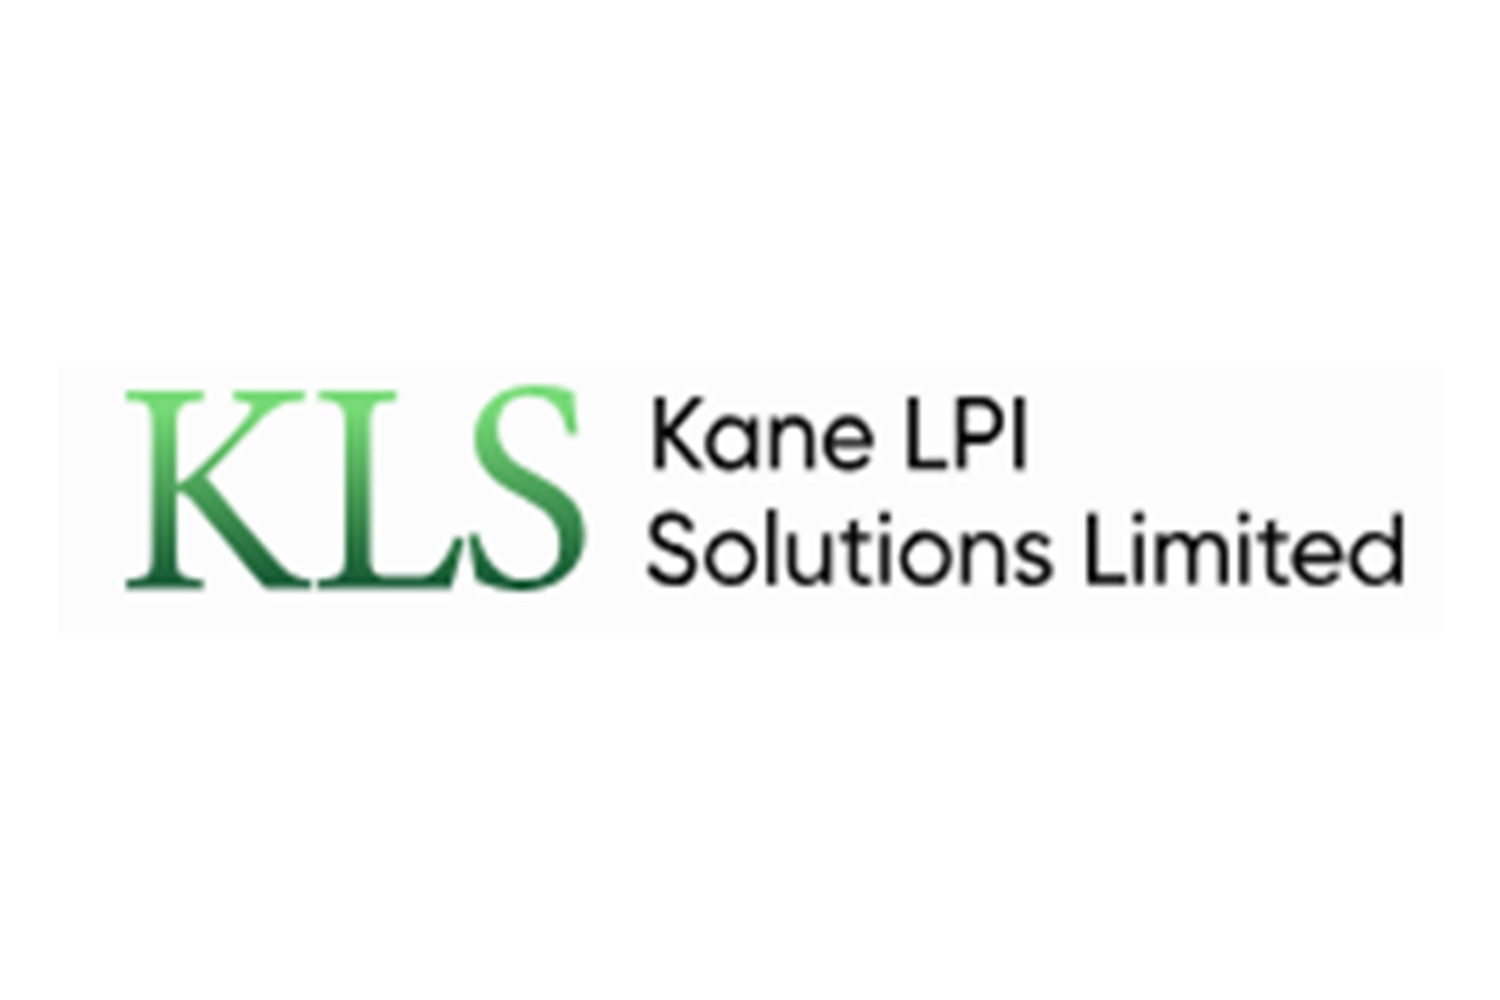 Отзывы о Kane LPI Solutions Limited: надежный брокер или обман?